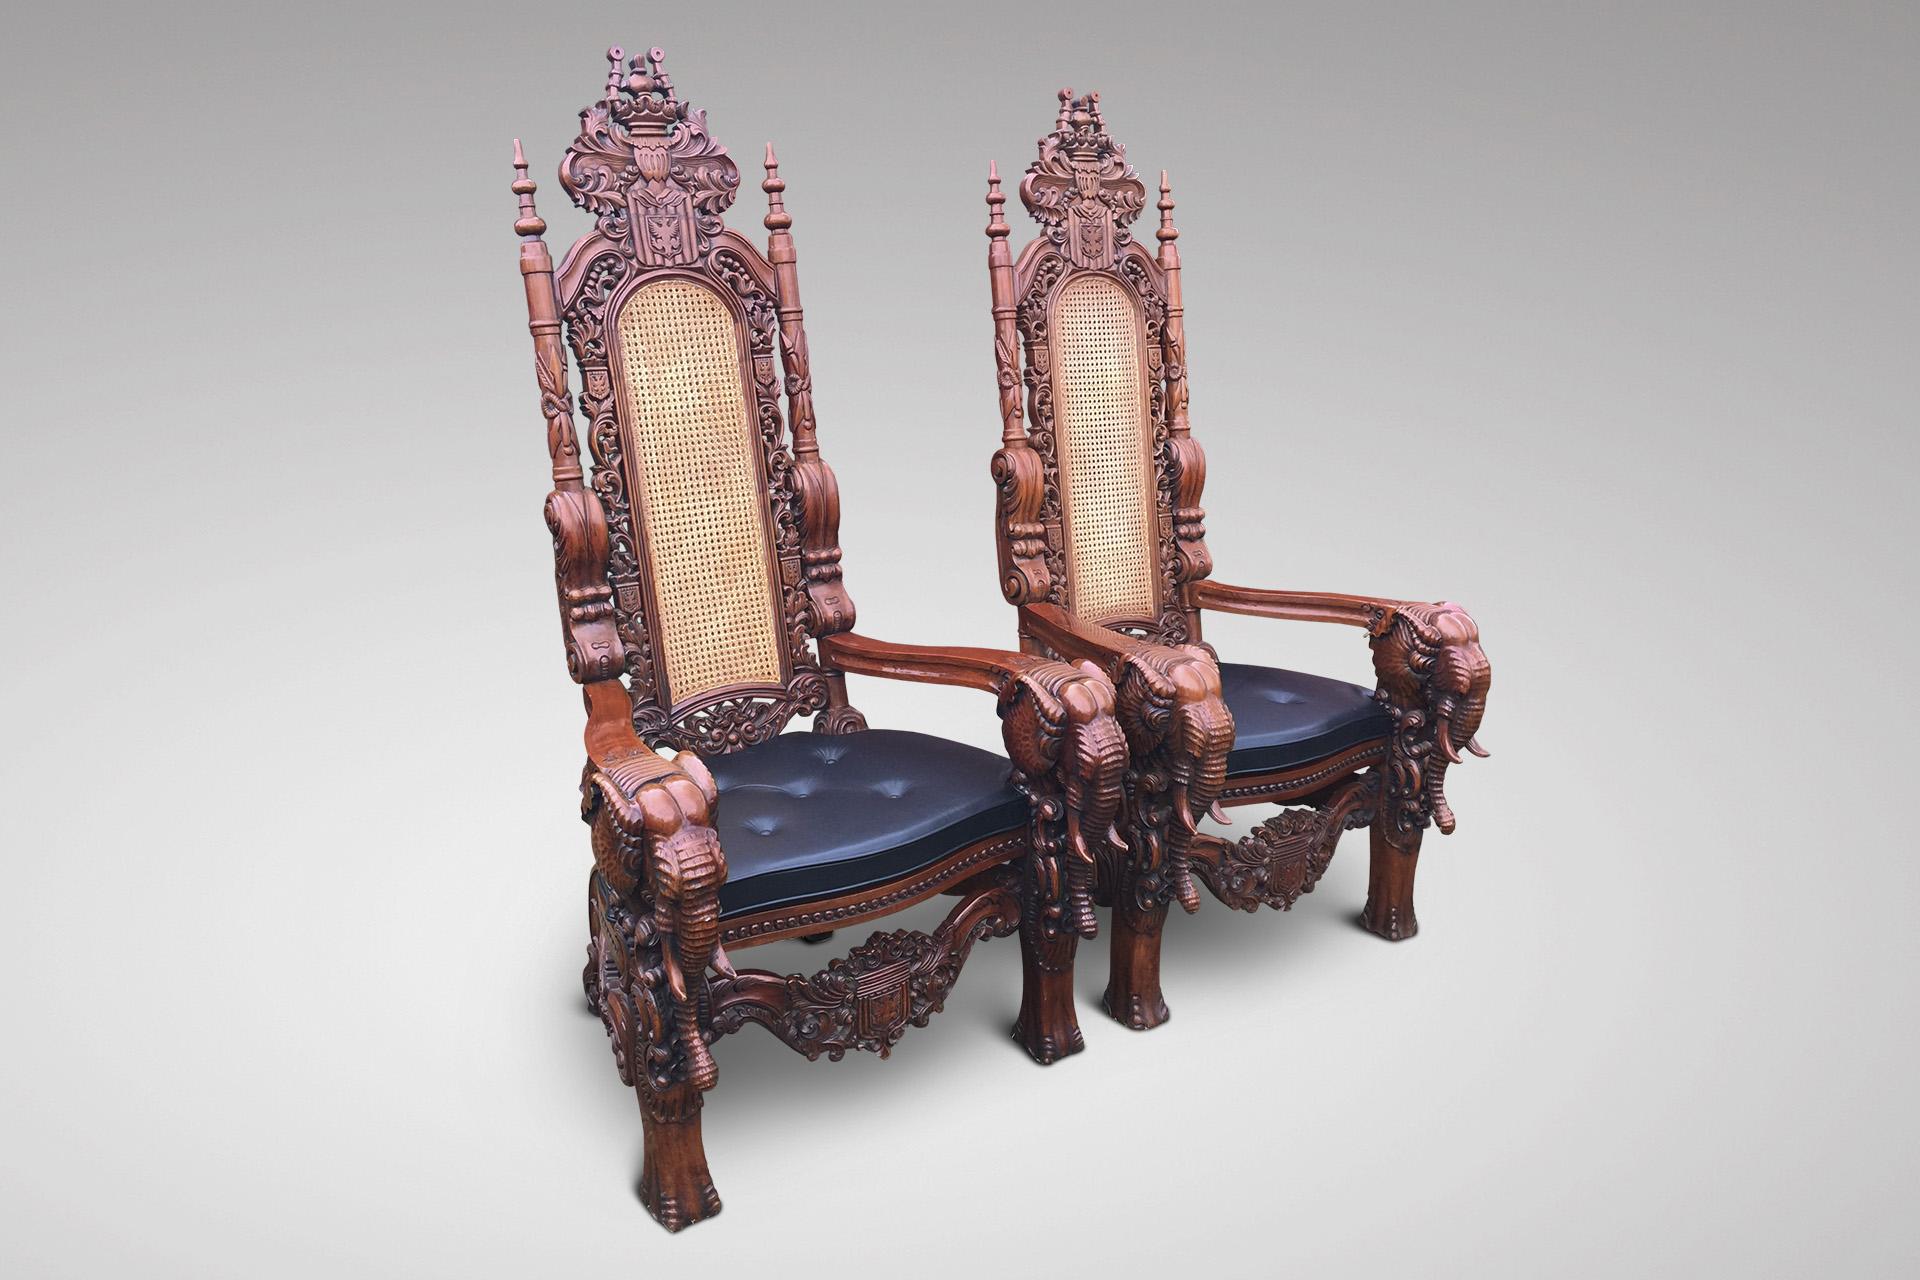 throne chair dimensions